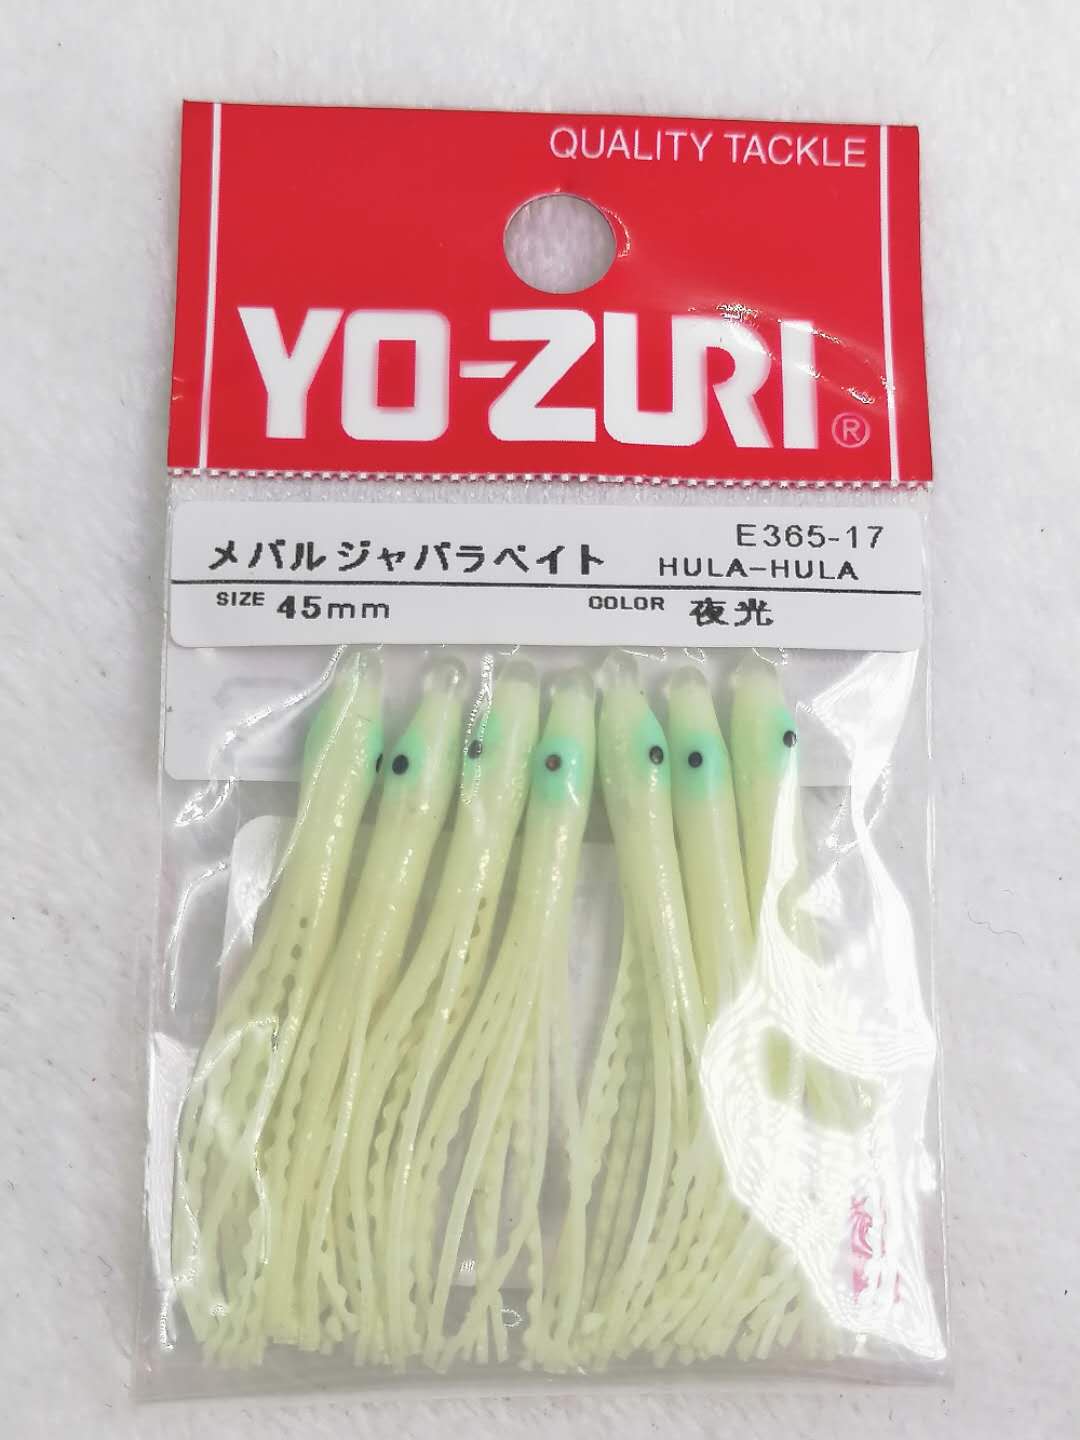 日本 YO-ZURI 夜光 4.5cm 软饵章鱼路亚饵 海钓饵 鱿鱼饵假饵诱鱼